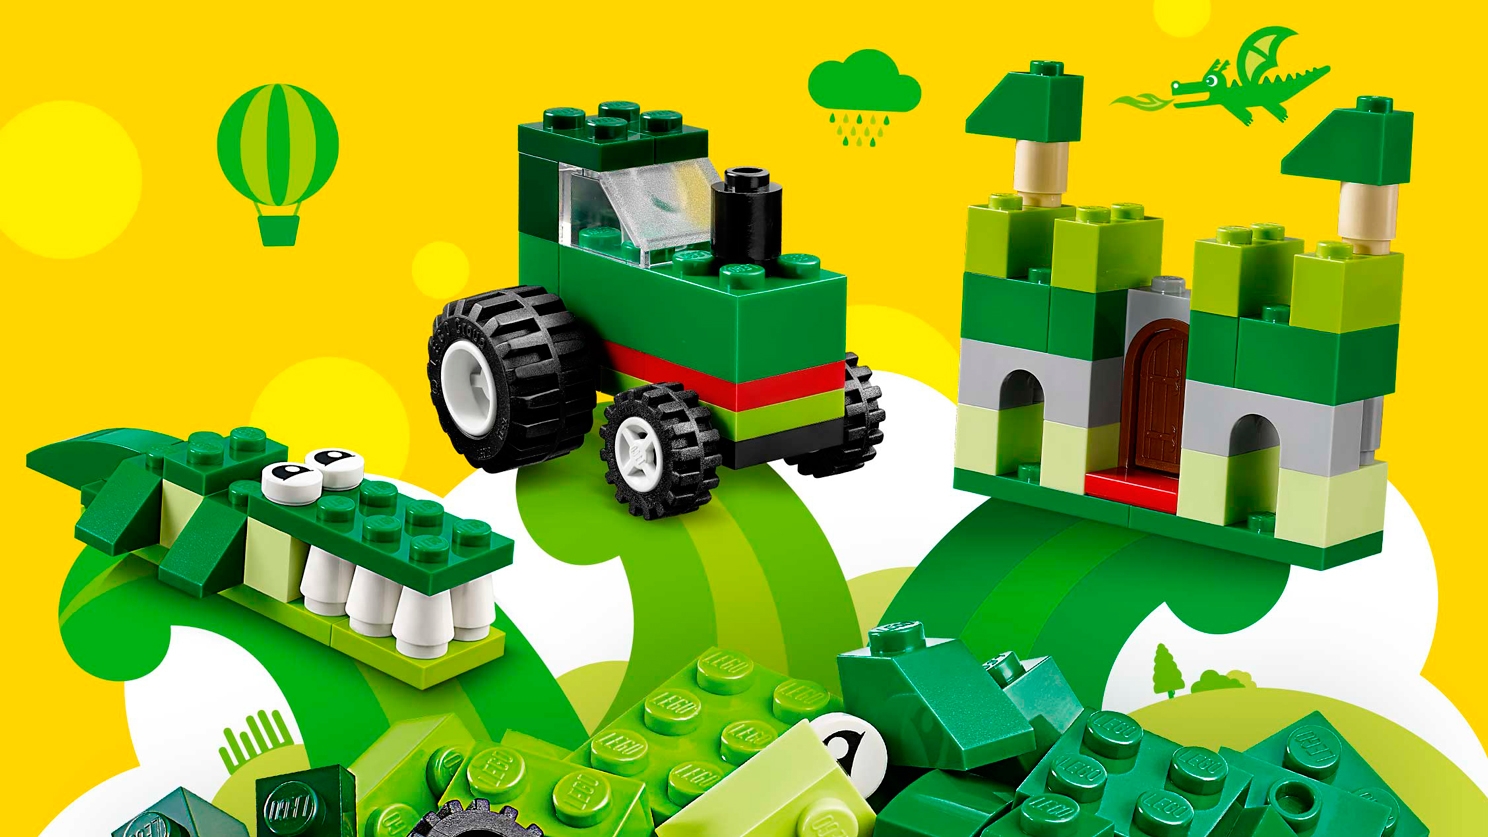 spier Gangster Kostuums Green Creativity Box 10708 - LEGO® Classic Sets - LEGO.com for kids